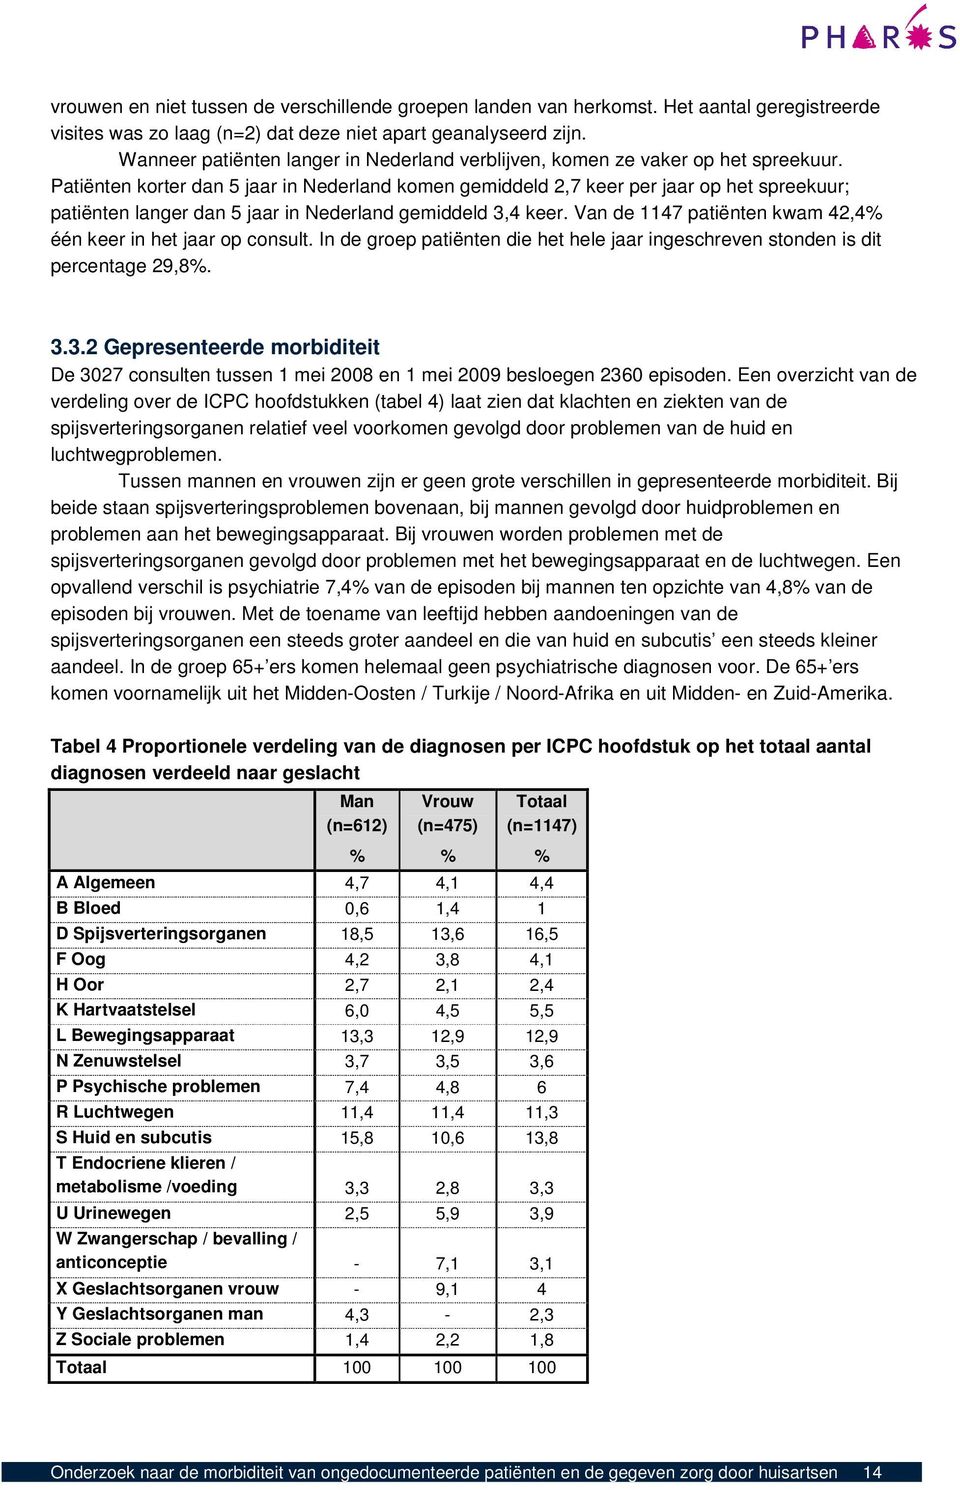 Patiënten korter dan 5 jaar in Nederland komen gemiddeld 2,7 keer per jaar op het spreekuur; patiënten langer dan 5 jaar in Nederland gemiddeld 3,4 keer.